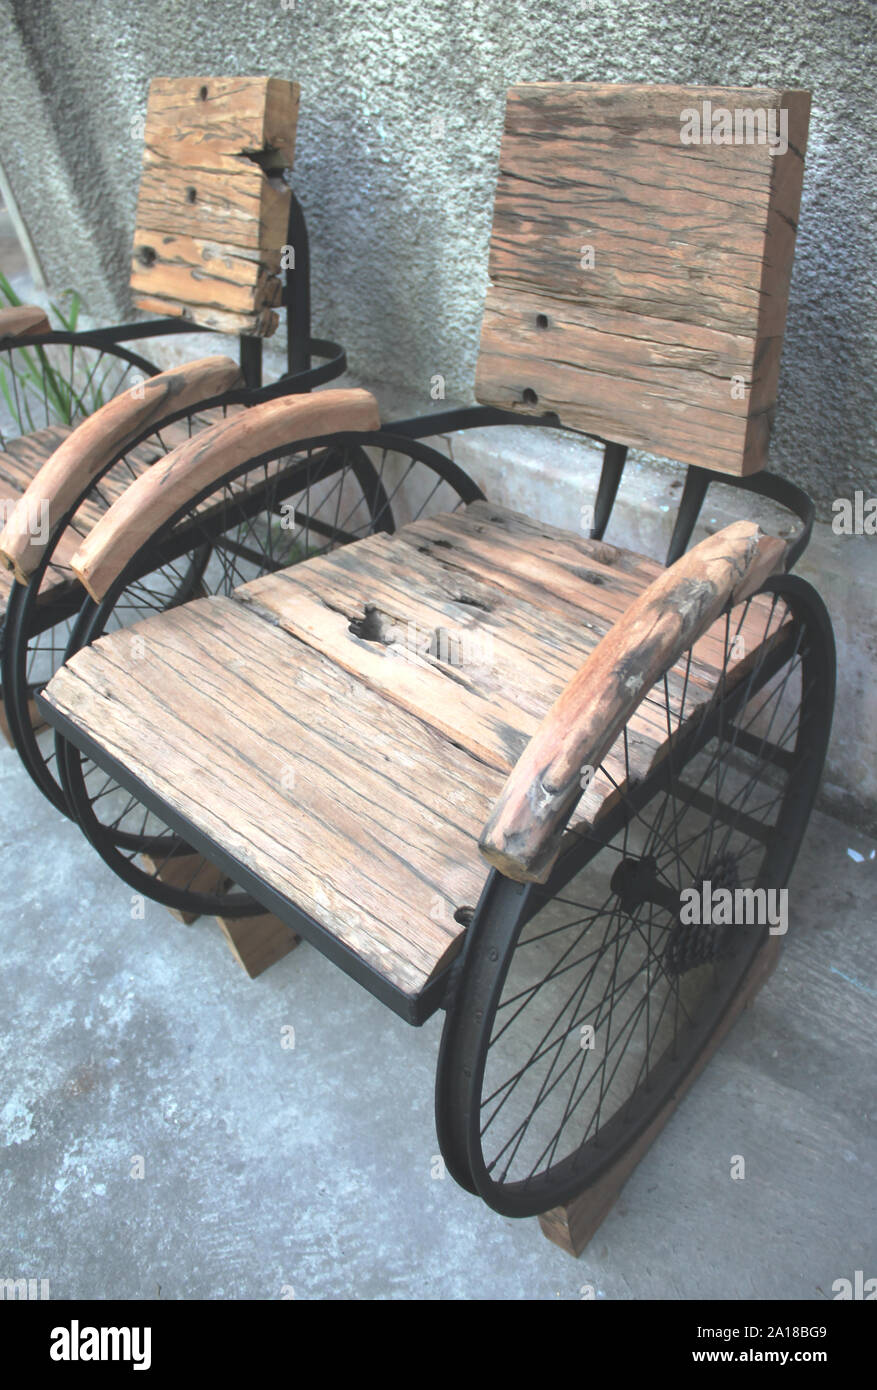 Una combinación de muebles antiguos de madera y sillas de hierro hechas de bienes usados Foto de stock